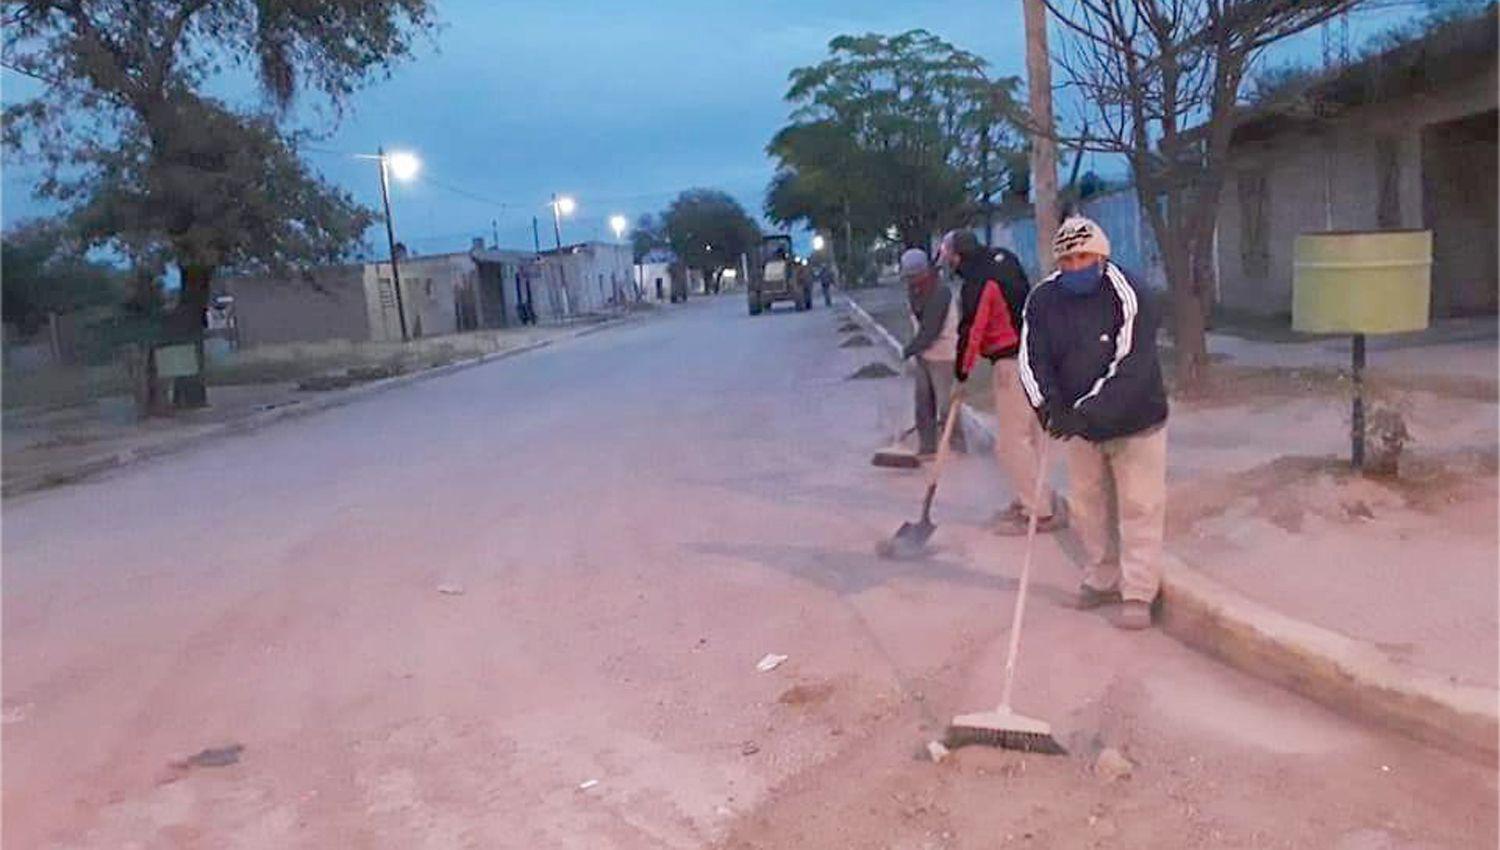 Continuacutea el desmalezamiento y limpieza de las calles en Brea Pozo